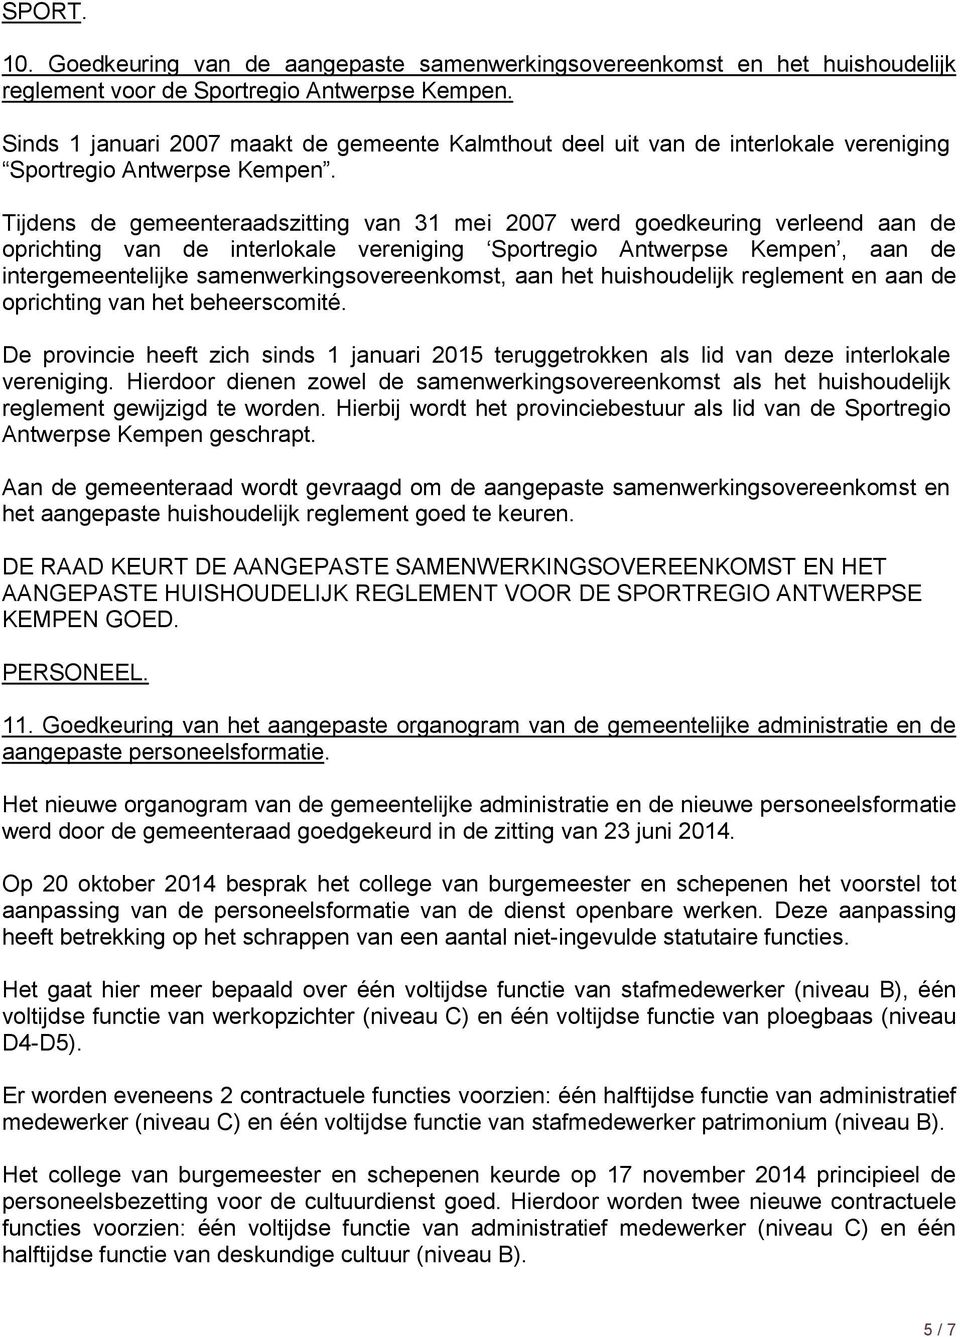 Tijdens de gemeenteraadszitting van 31 mei 2007 werd goedkeuring verleend aan de oprichting van de interlokale vereniging Sportregio Antwerpse Kempen, aan de intergemeentelijke